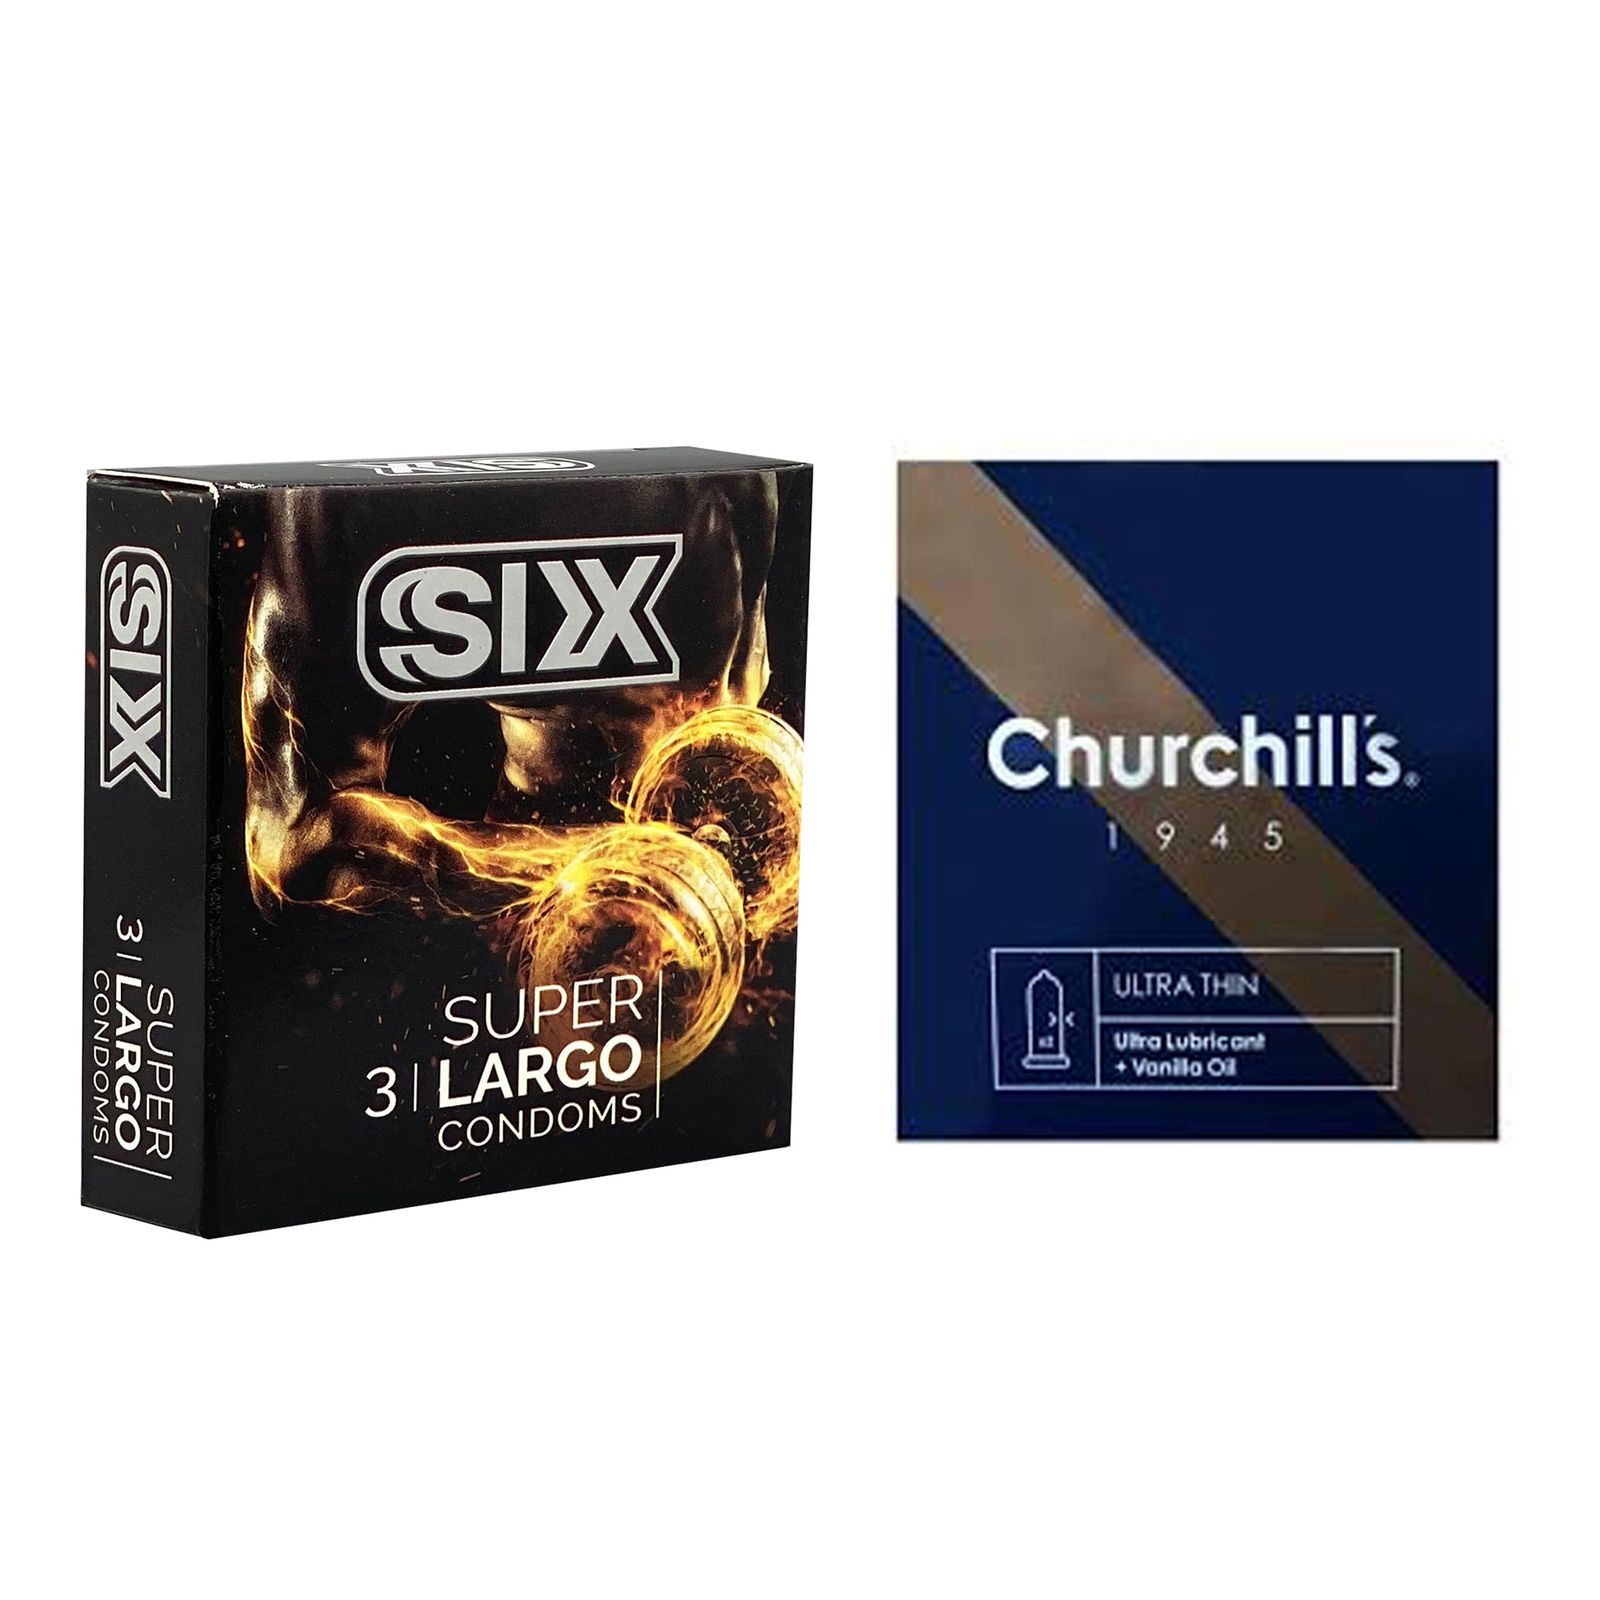 کاندوم چرچیلز مدل Ultra Thin بسته 3 عددی به همراه کاندوم سیکس مدل سفت کننده و بزرگ کننده بسته 3 عددی -  - 1